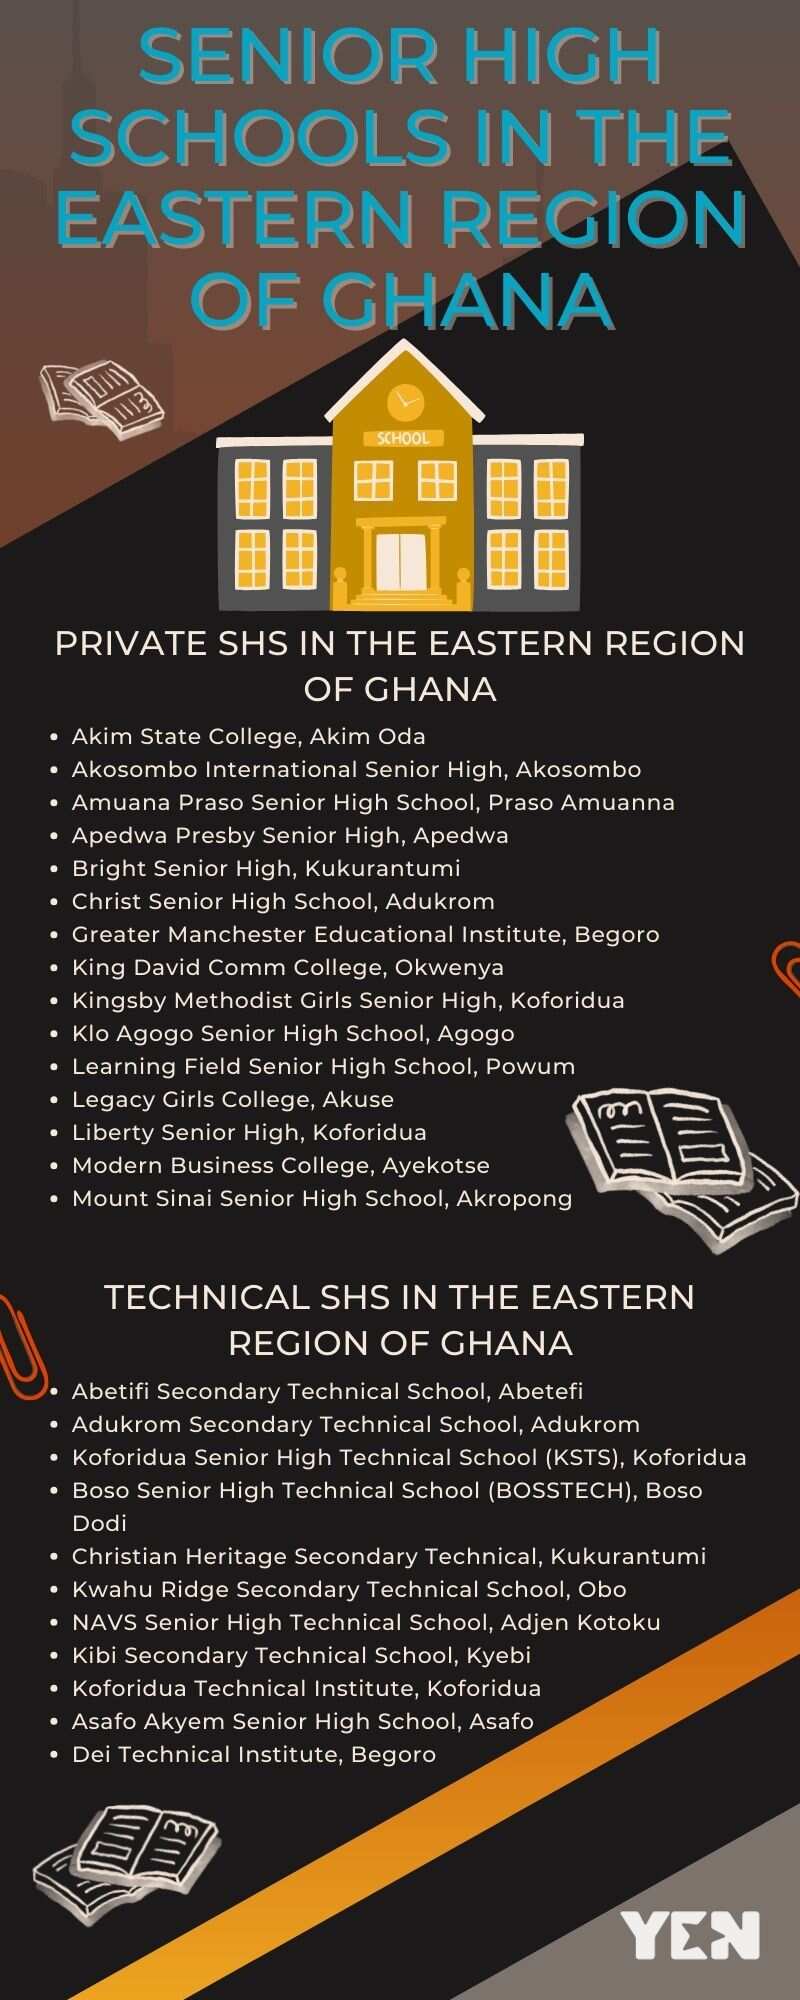 Senior high schools in the Eastern Region of Ghana